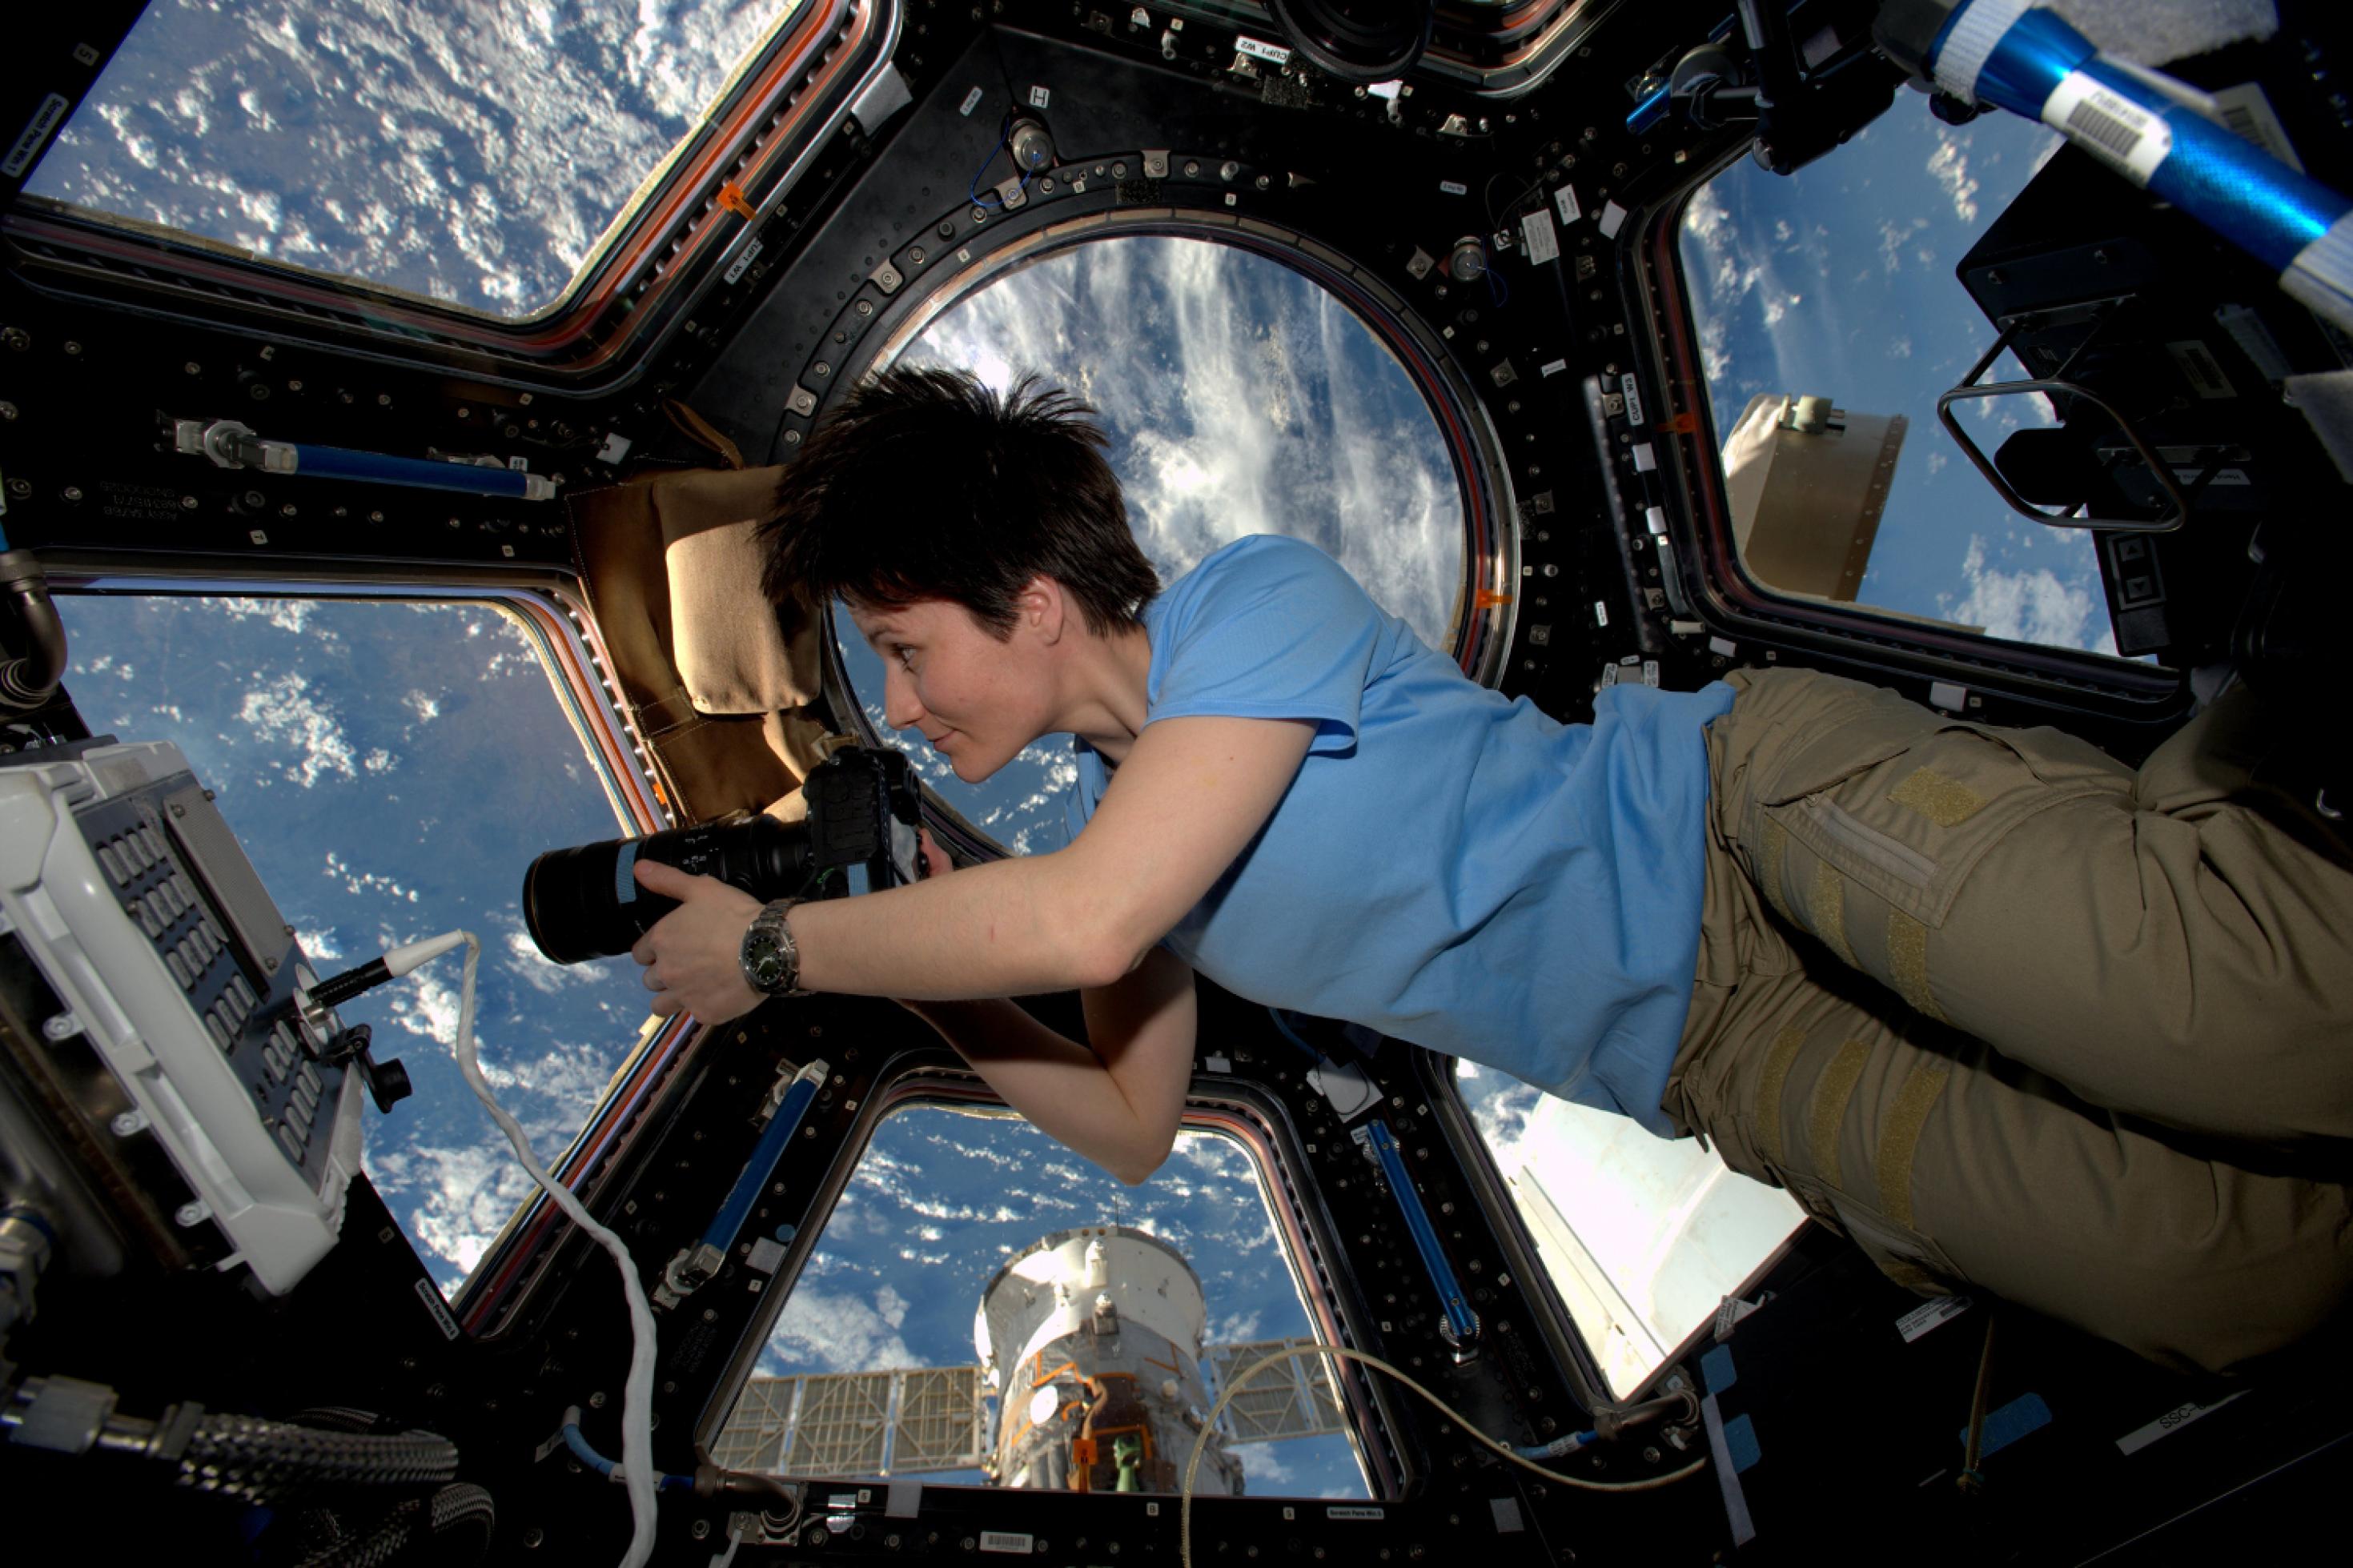 ESA-Astronautin Samantha Cristoforetti schwebt im Cupula-Modul der ISS, mit großen Fenstern und Erde im Hintergrund, hält eine große Kamera in der Hand und blickt konzentriert nach draußen.